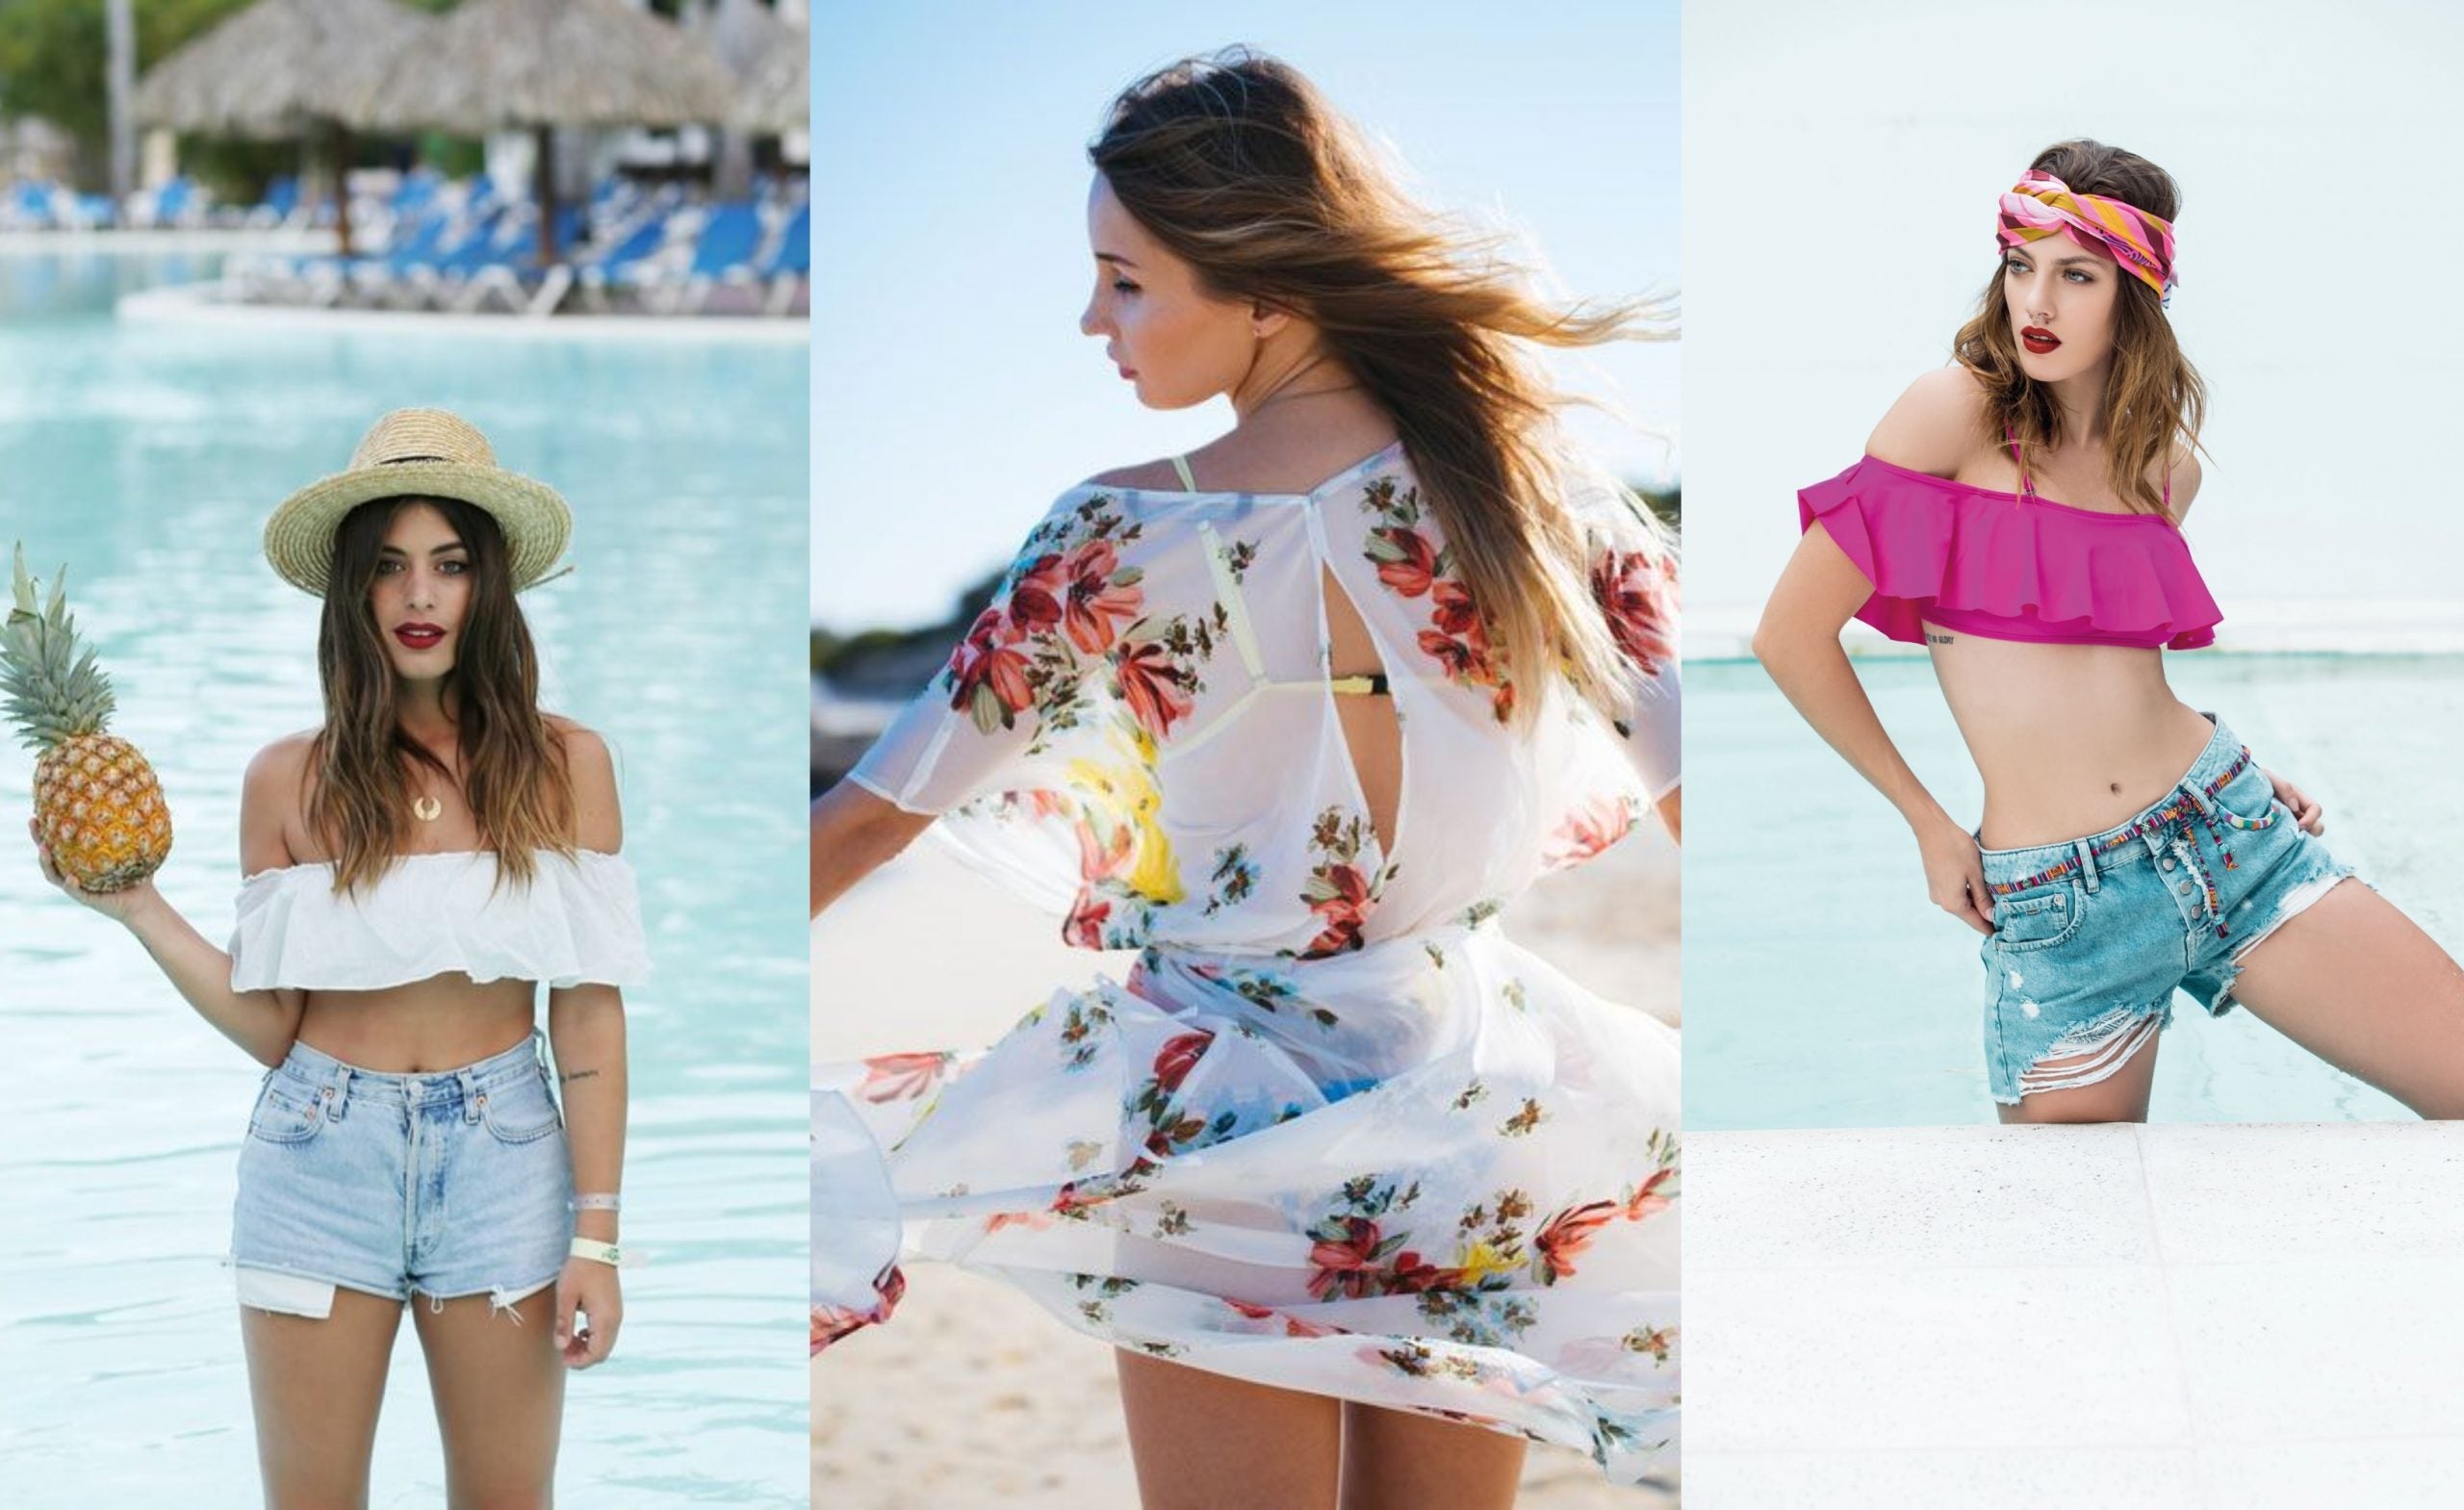 Moda: 10 ideas para armar un look de playa tal y como visten las